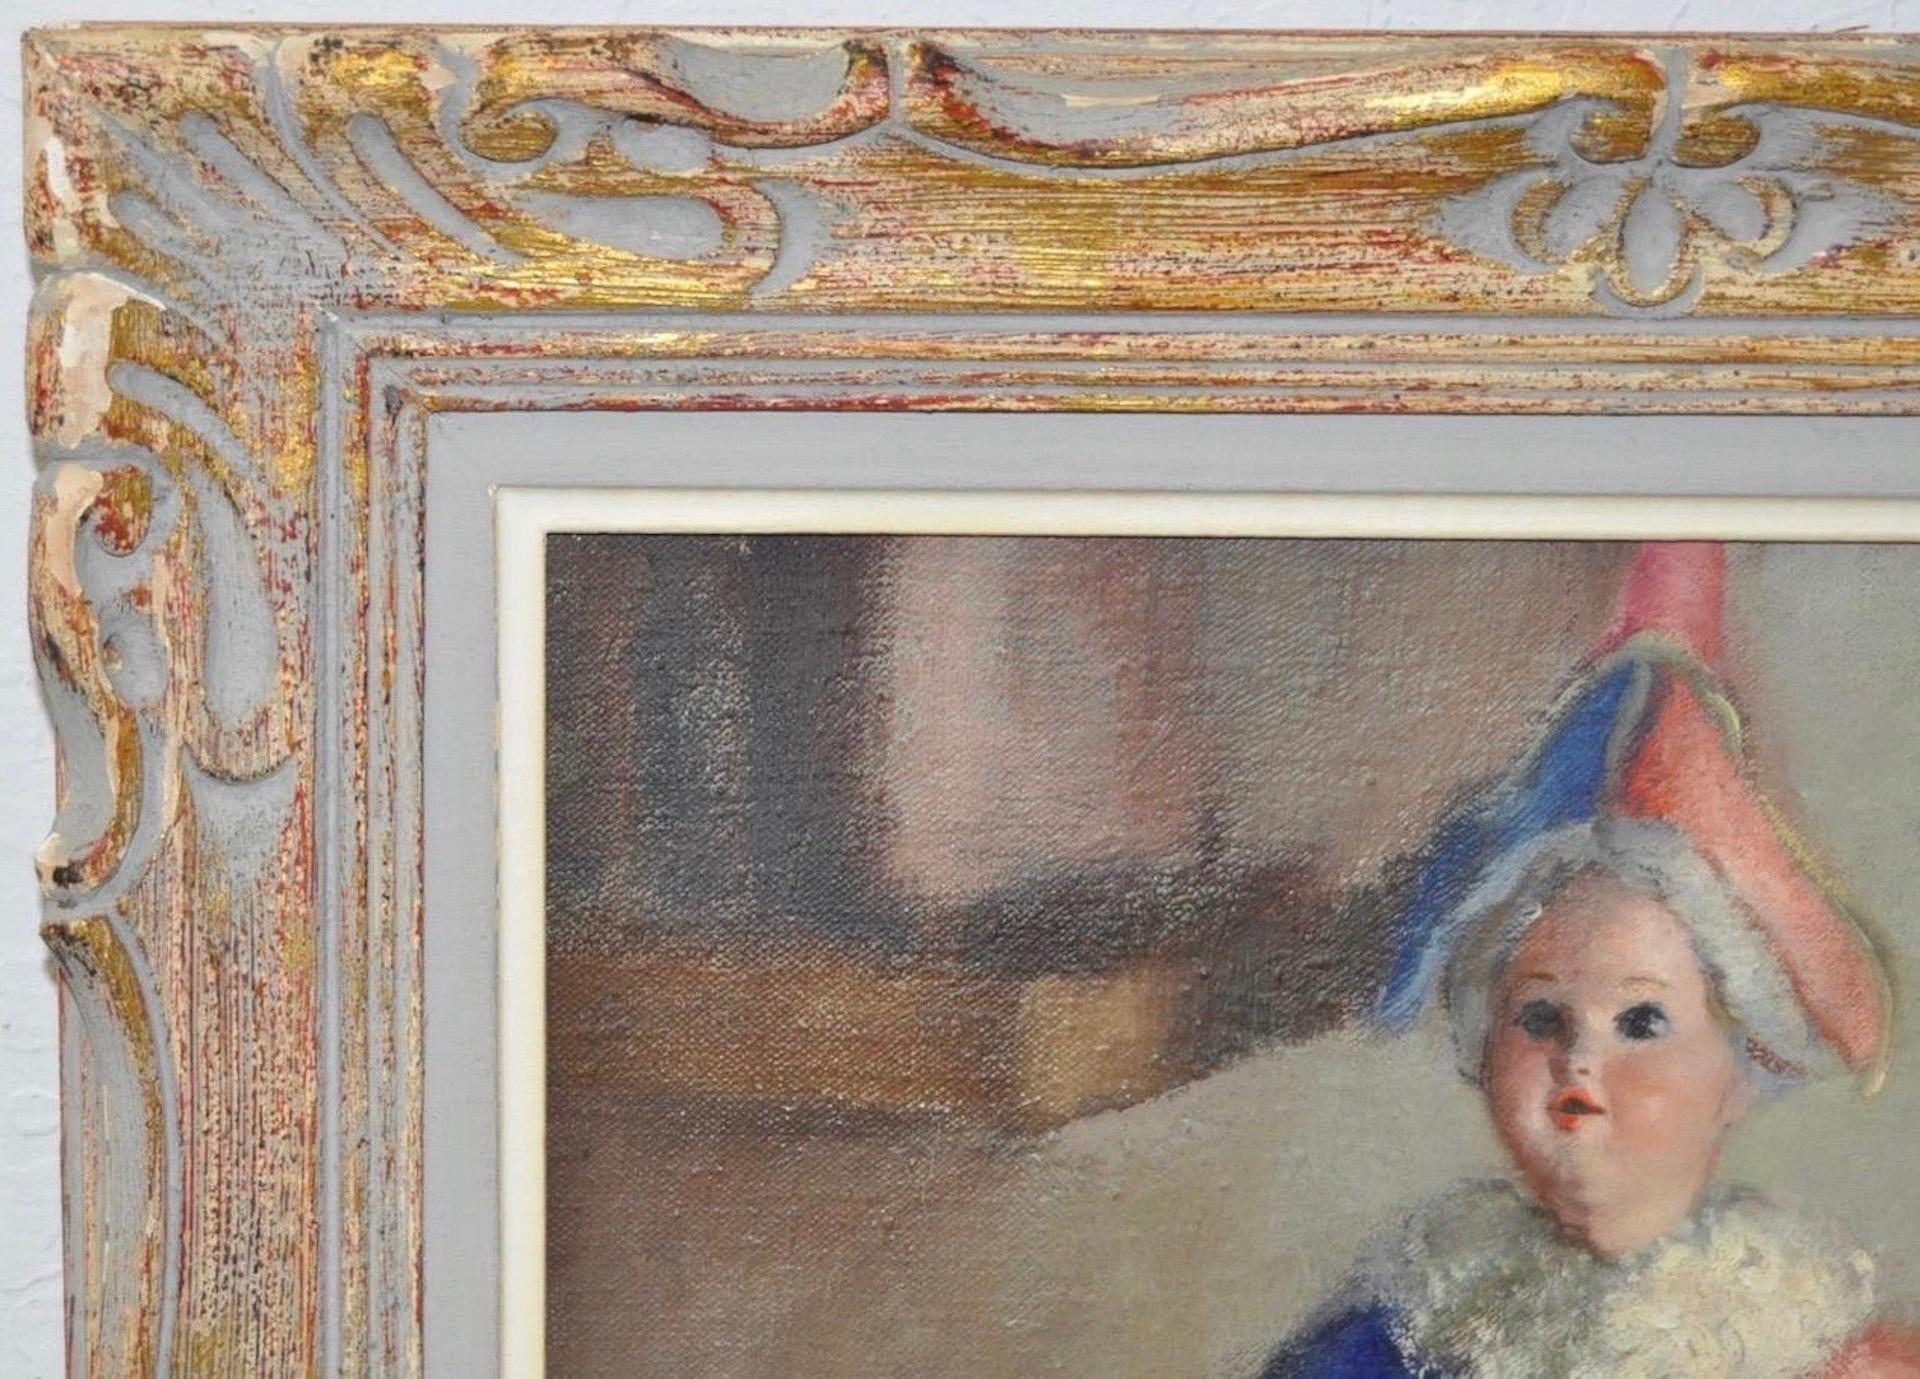 Die Puppe und die Rose Stillleben Ölgemälde ca. 1930

Wunderbares Öl auf Leinwand von einem talentierten Künstler. Das Gemälde ist in der rechten unteren Ecke und auf der Rückseite (teilweise unleserlich) signiert.

Diese charmante Puppe in ihrem